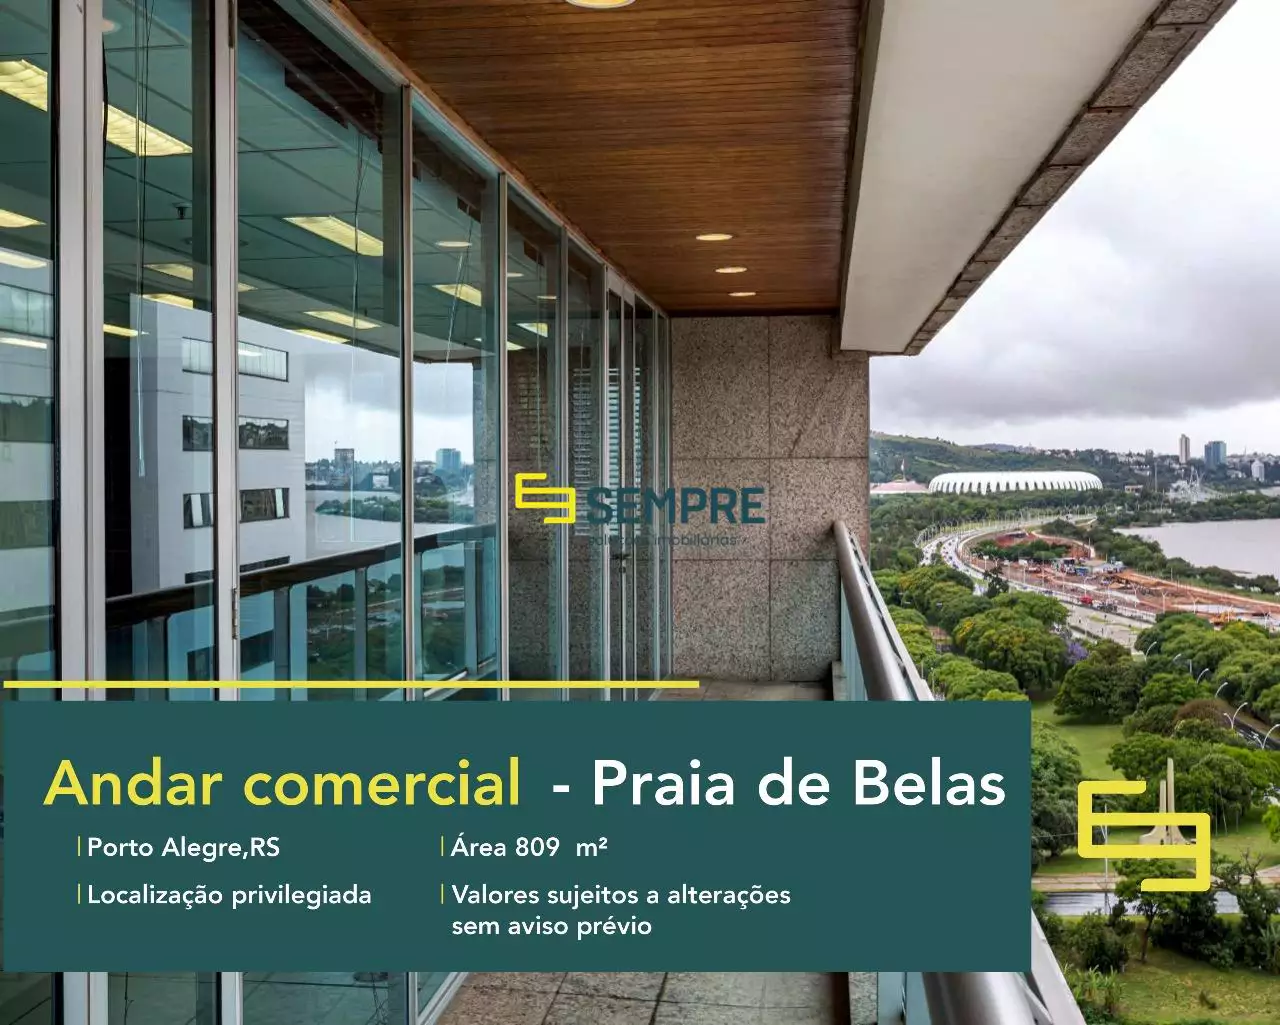 Andar corporativo para locação em Porto Alegre - RS, excelente localização. O estabelecimento comercial conta com área de 809 m².